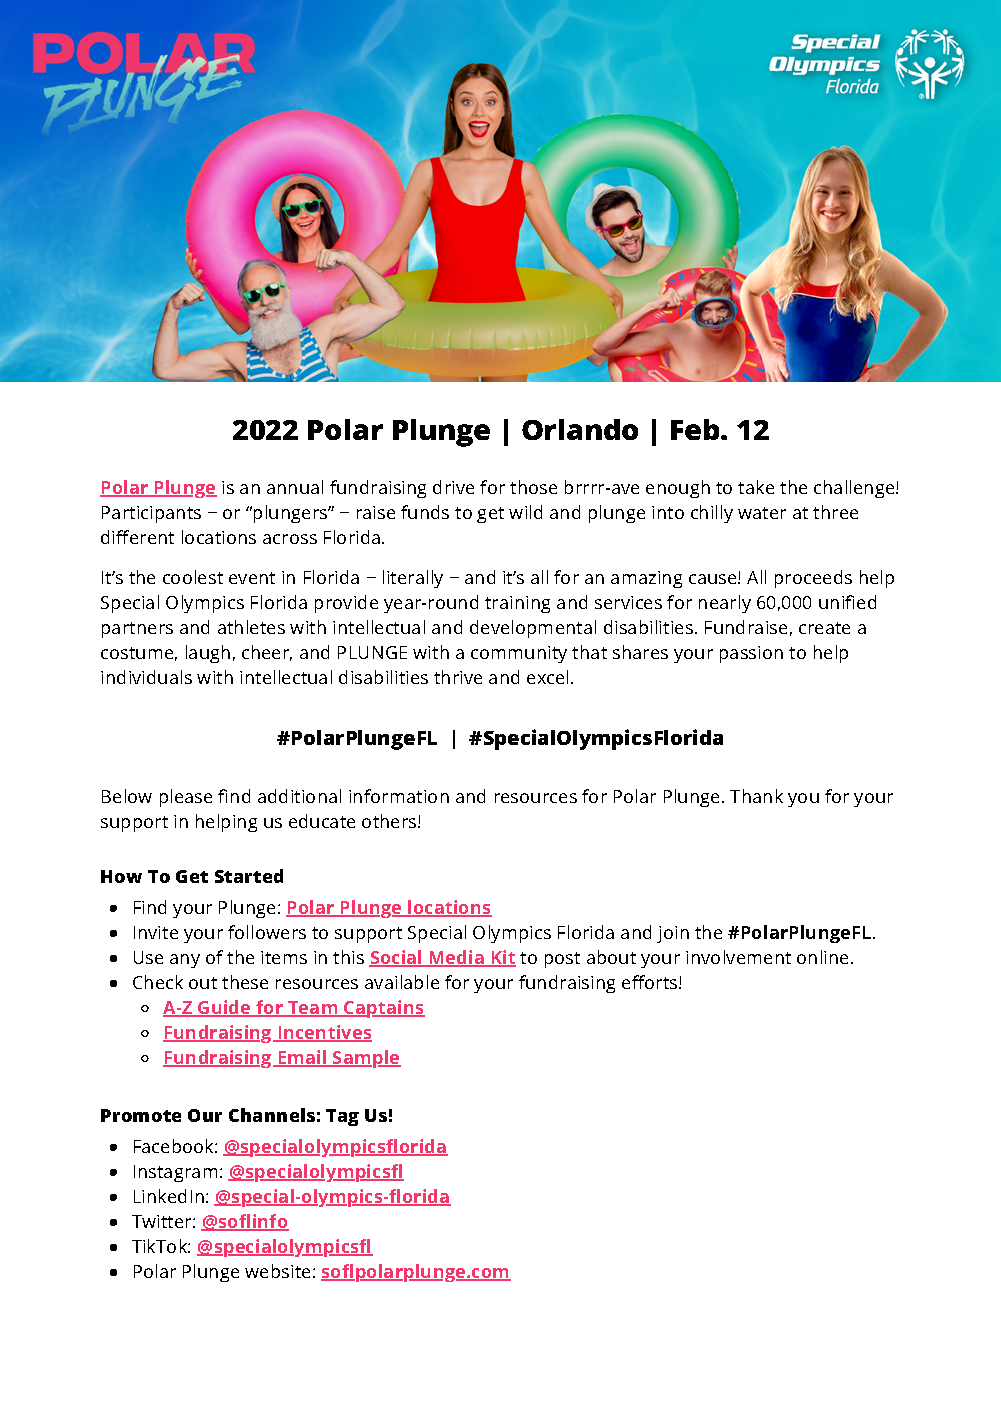 Polar Plunge Orlando - Read First